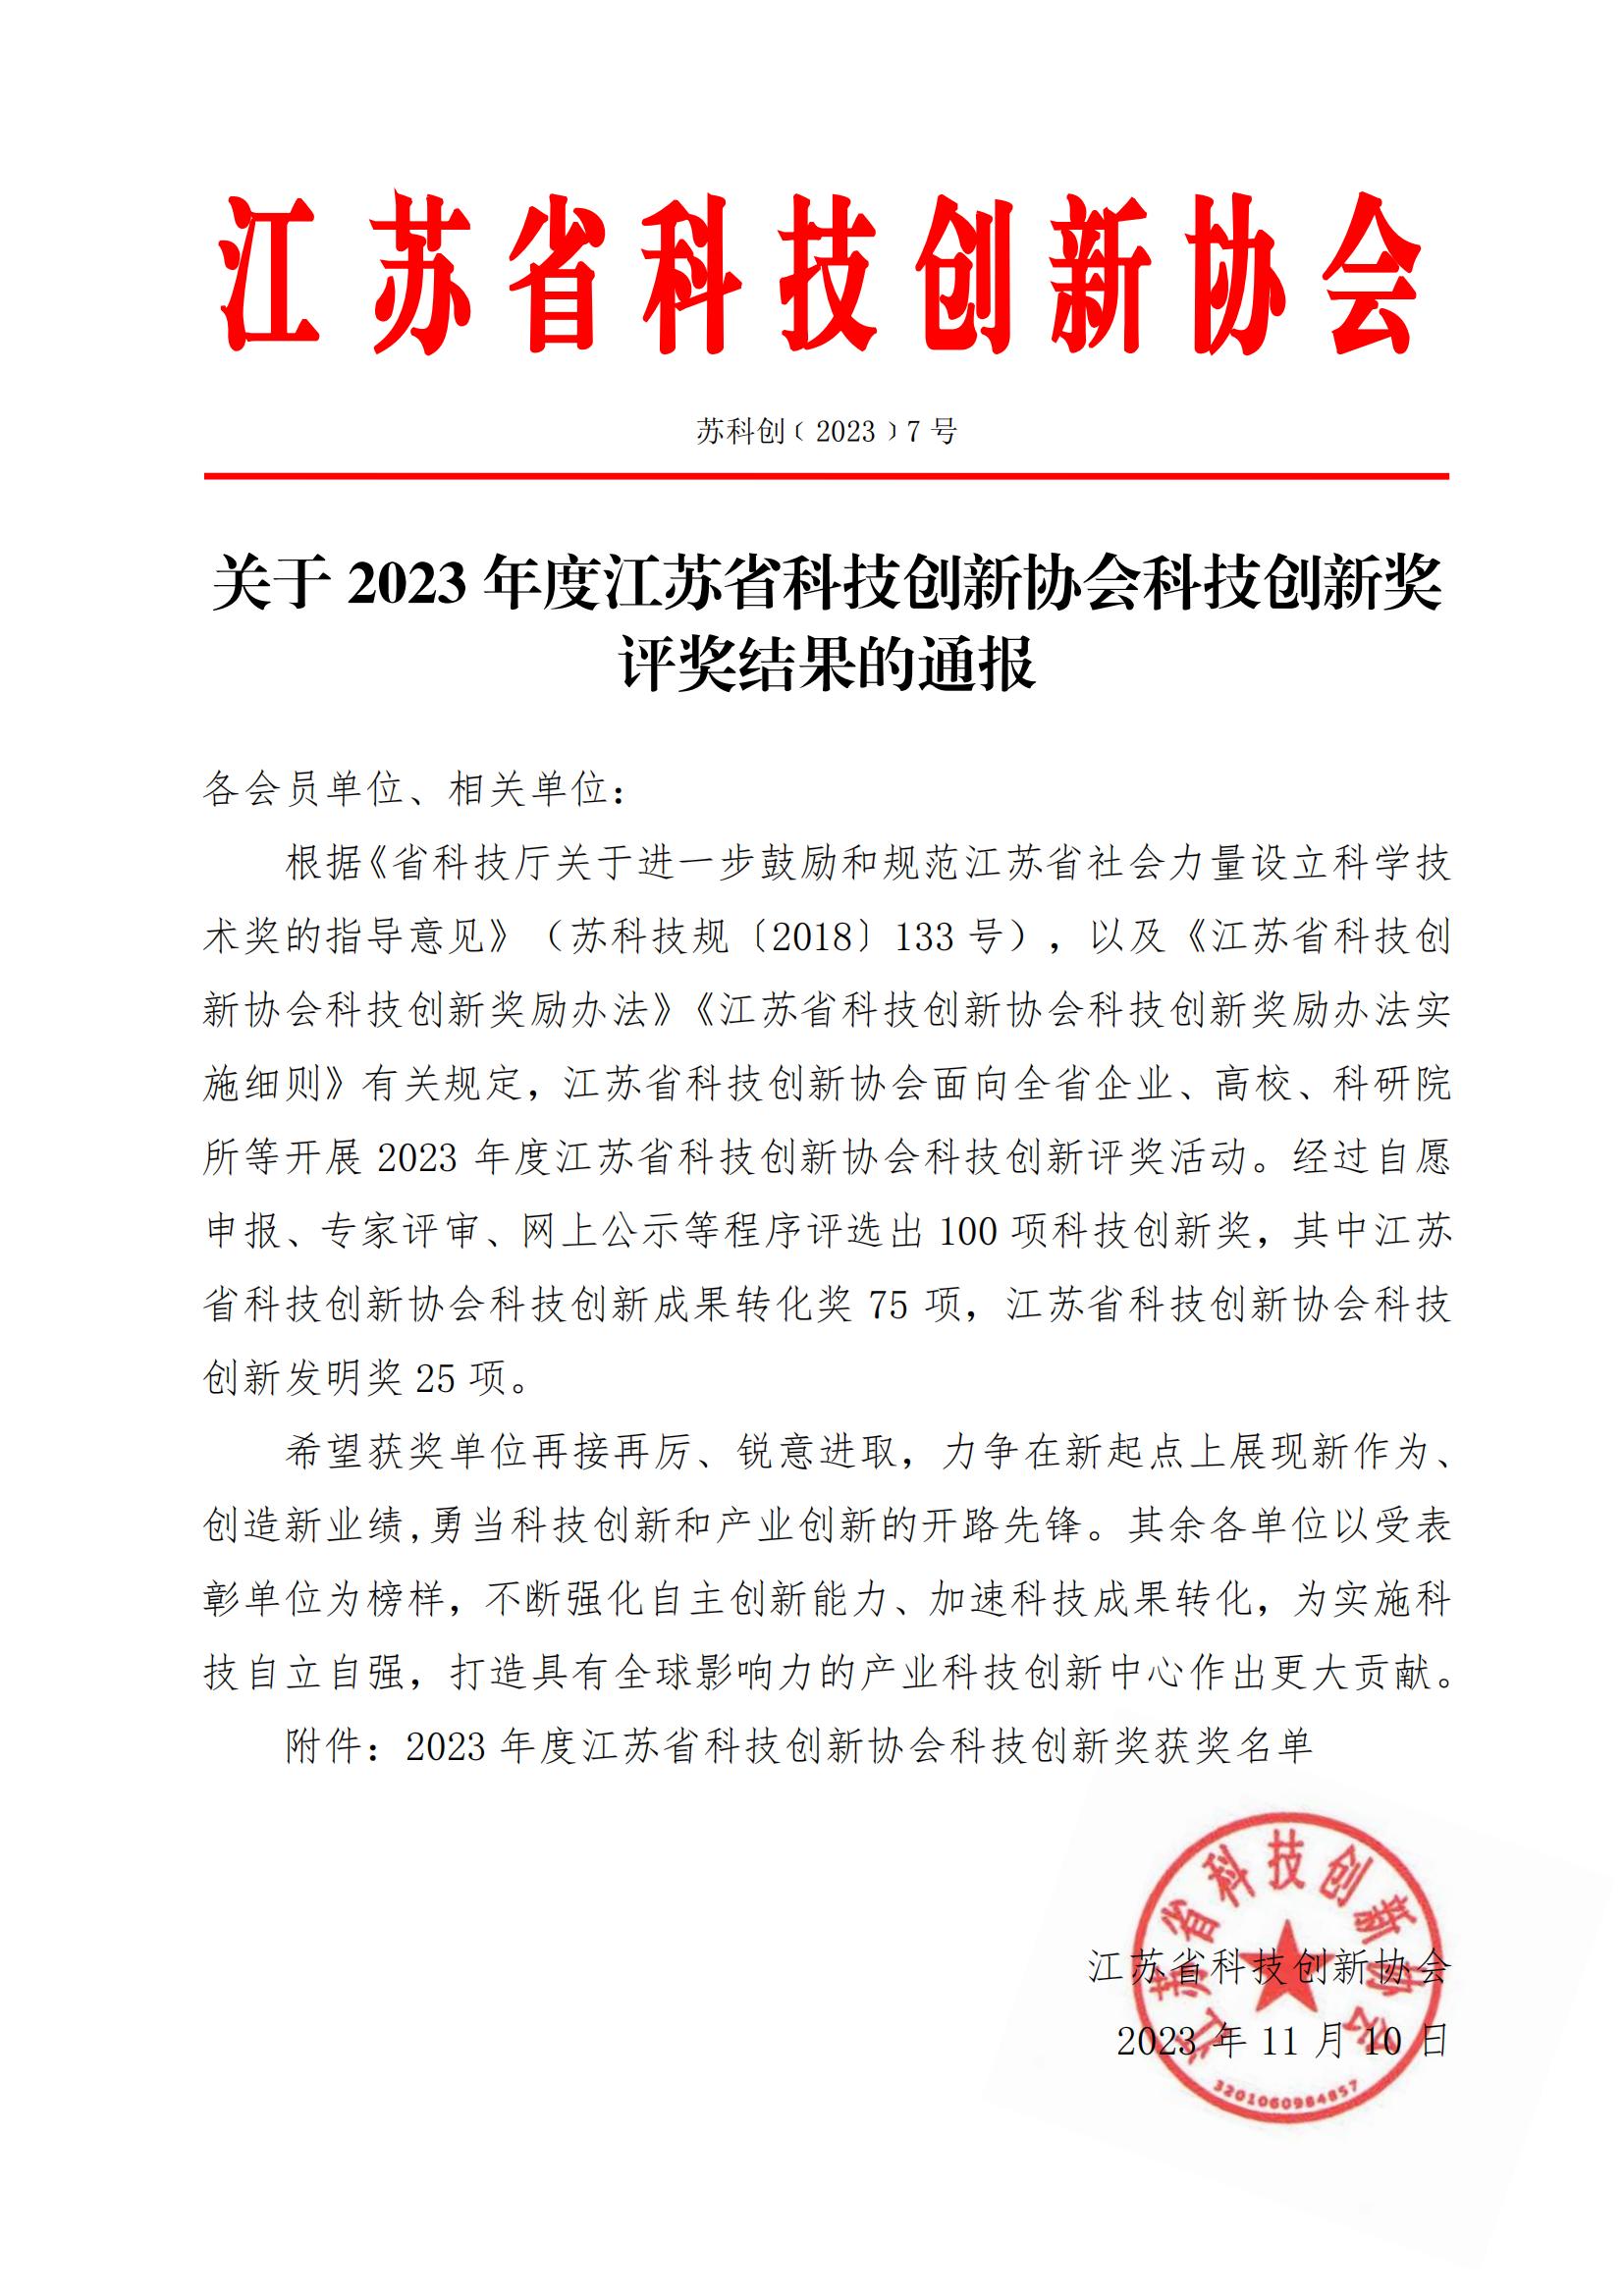 2023年江苏省科技创新协会科技创新奖评奖结果_00